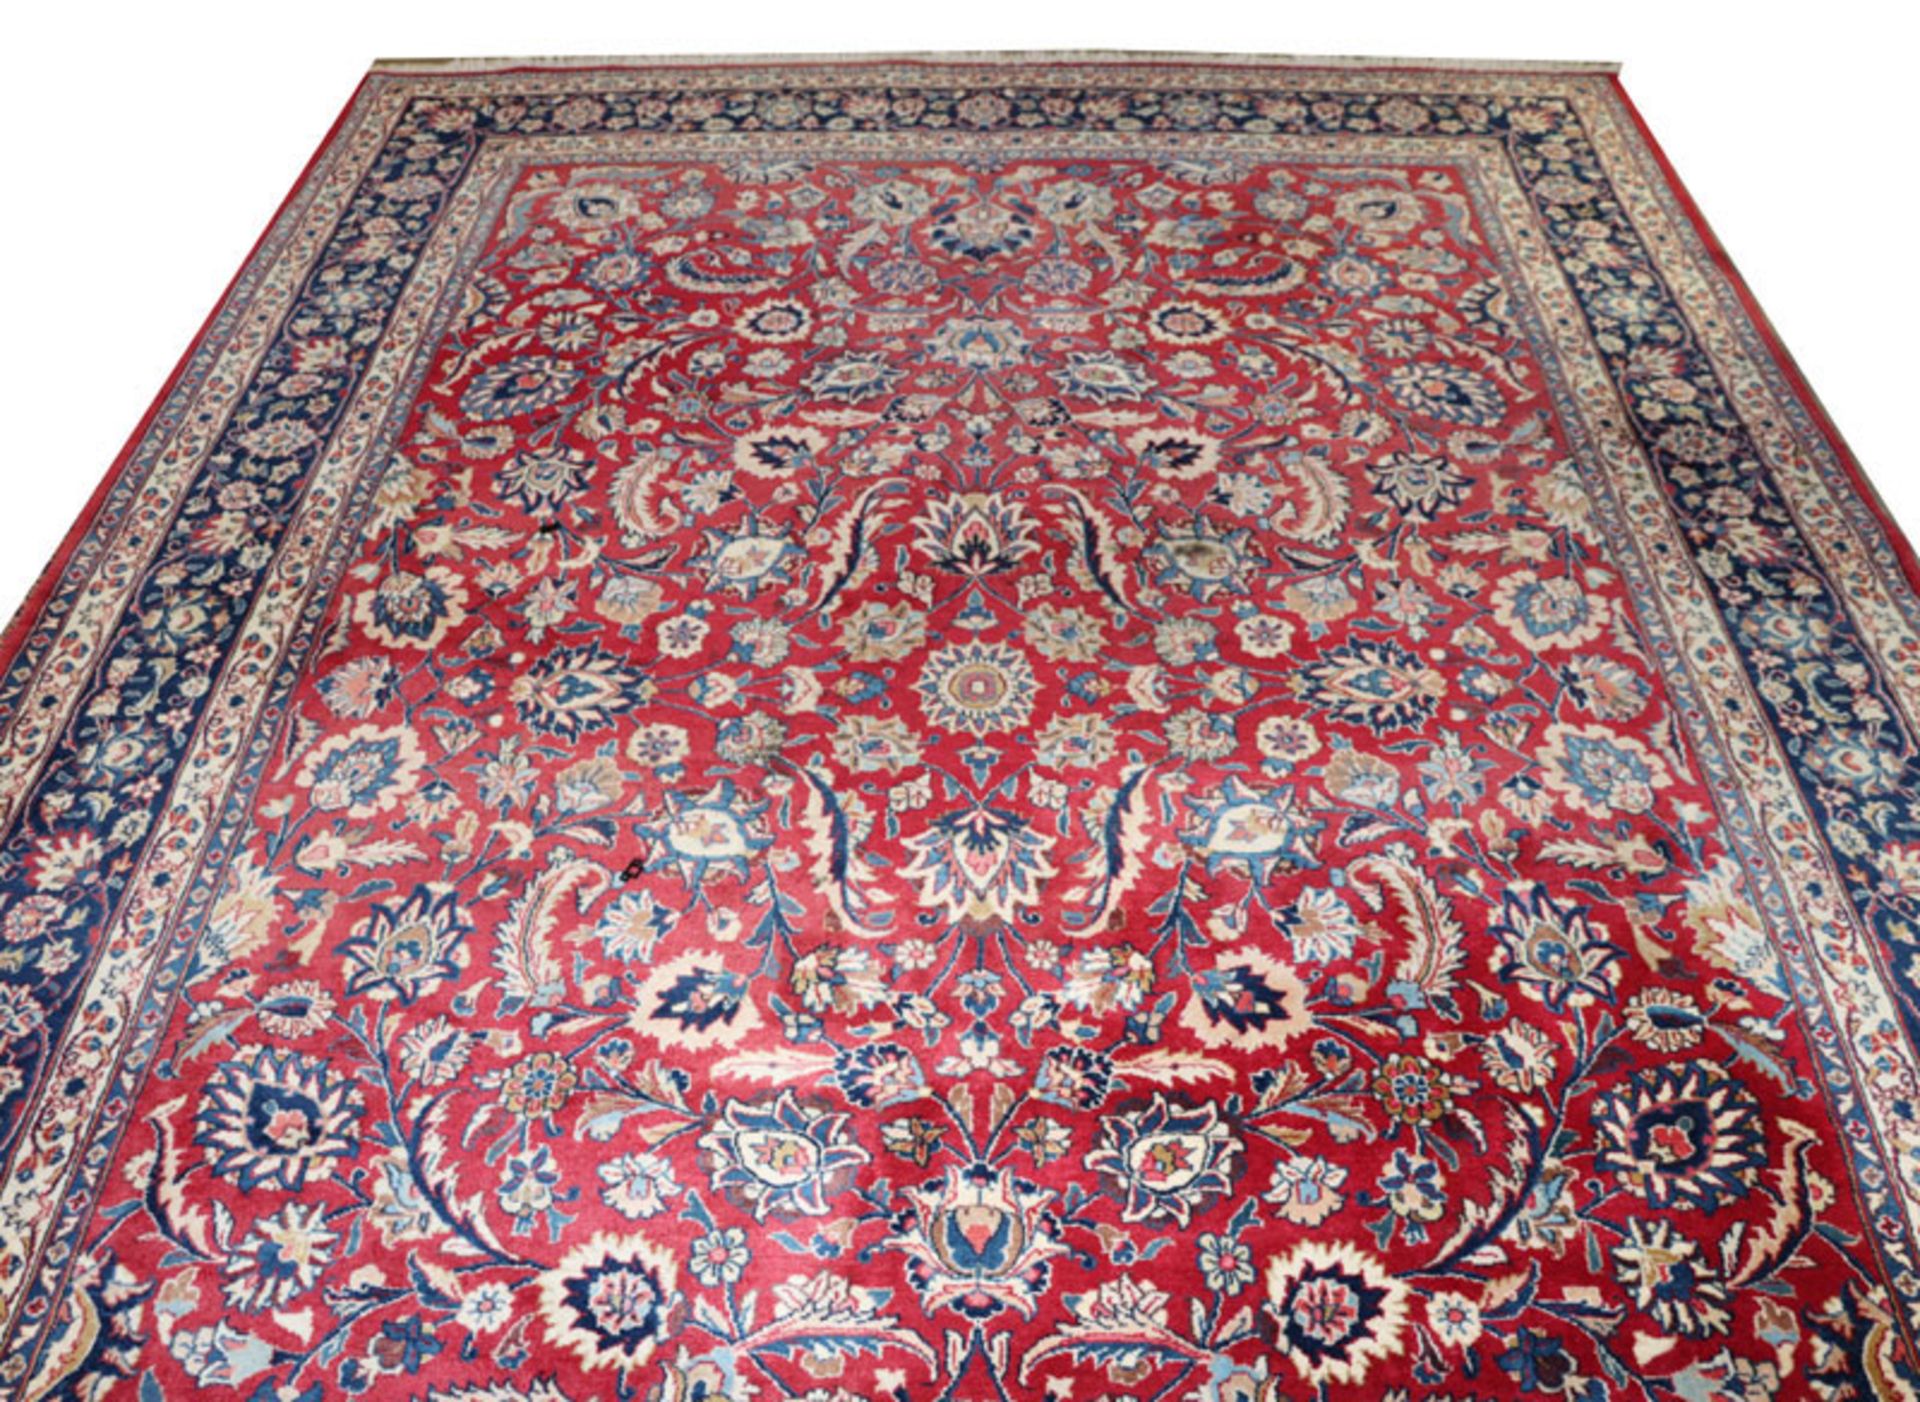 Teppich, Sarough, rot/blau/bunt, Gebrauchsspuren, teils fleckig, 334 cm x 237 cm